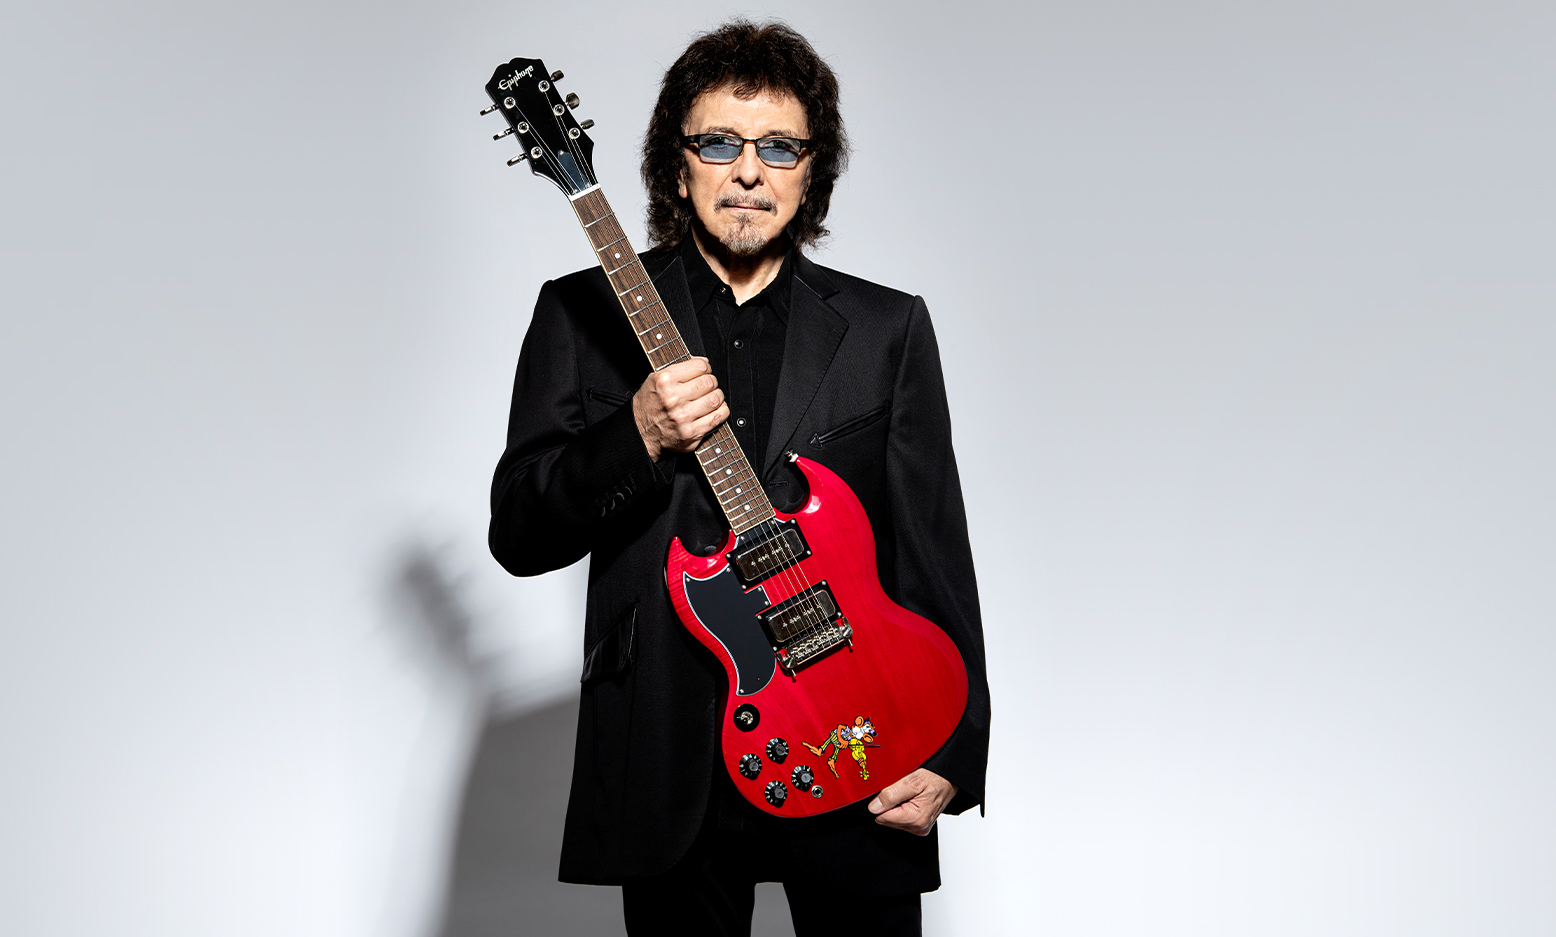 Monumento atravesar retorta Epiphone lanza una versión asequible de la Tony Iommi SG Special del  guitarrista de Black Sabbath | Guitarristas